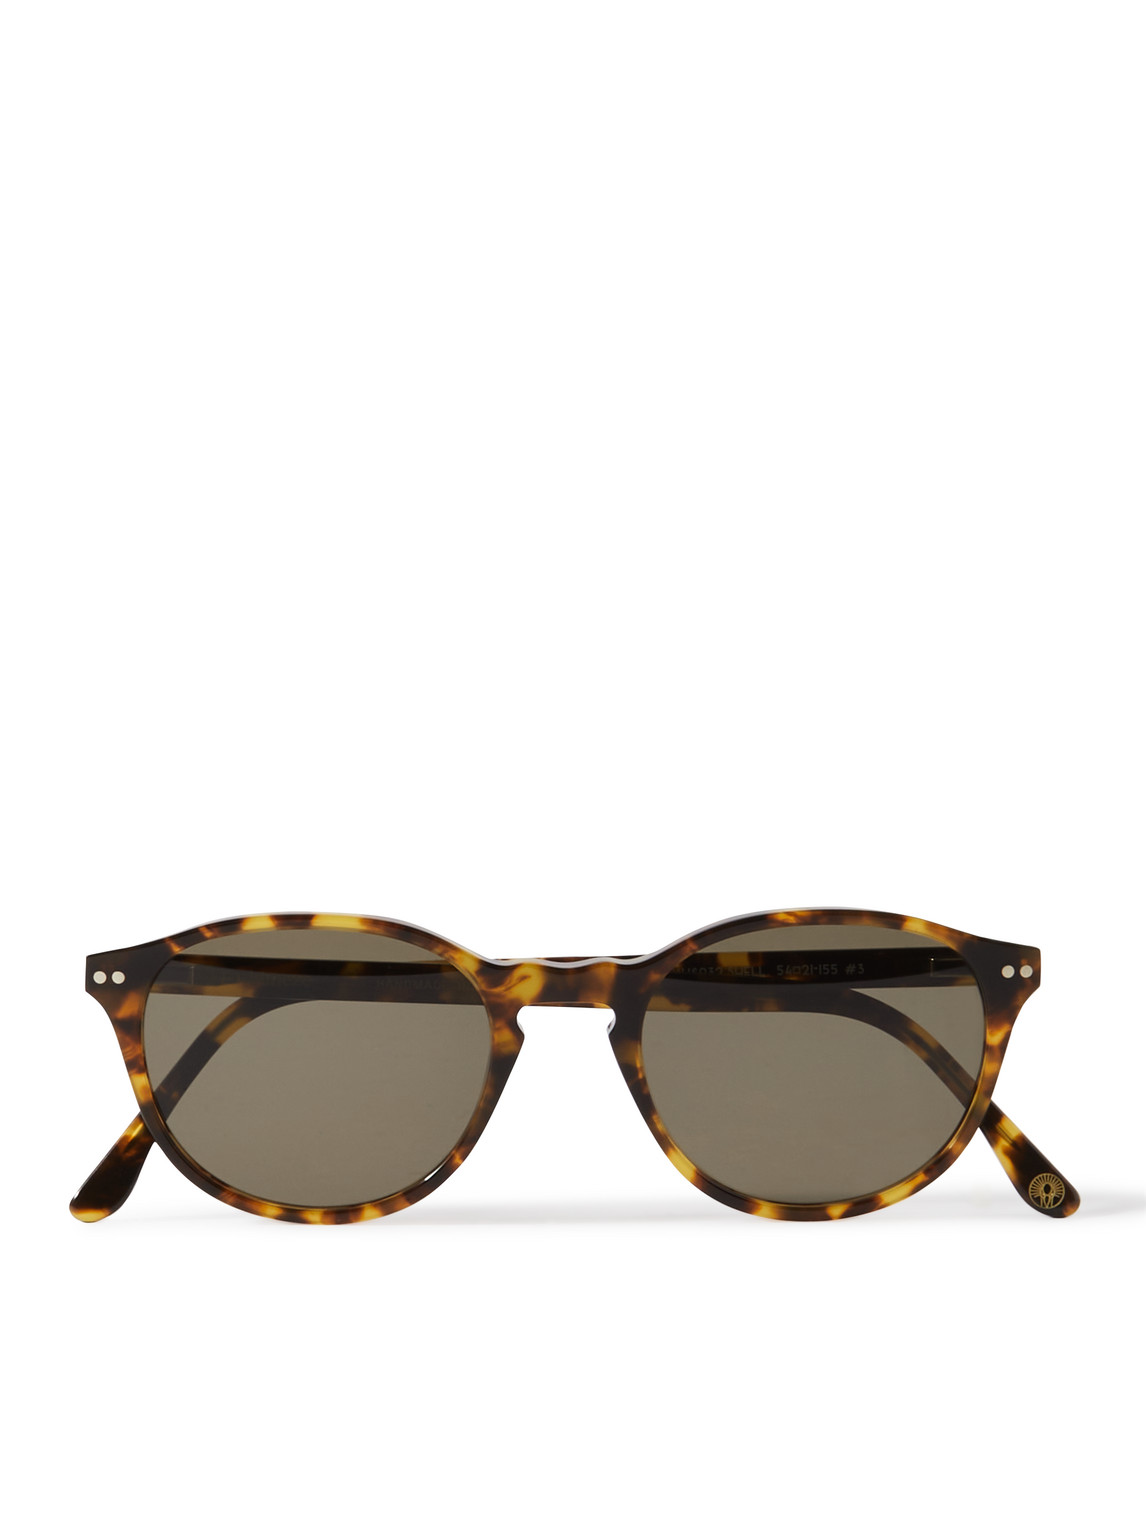 Kimeze Khari Round-frame Tortoiseshell Acetate Sunglasses